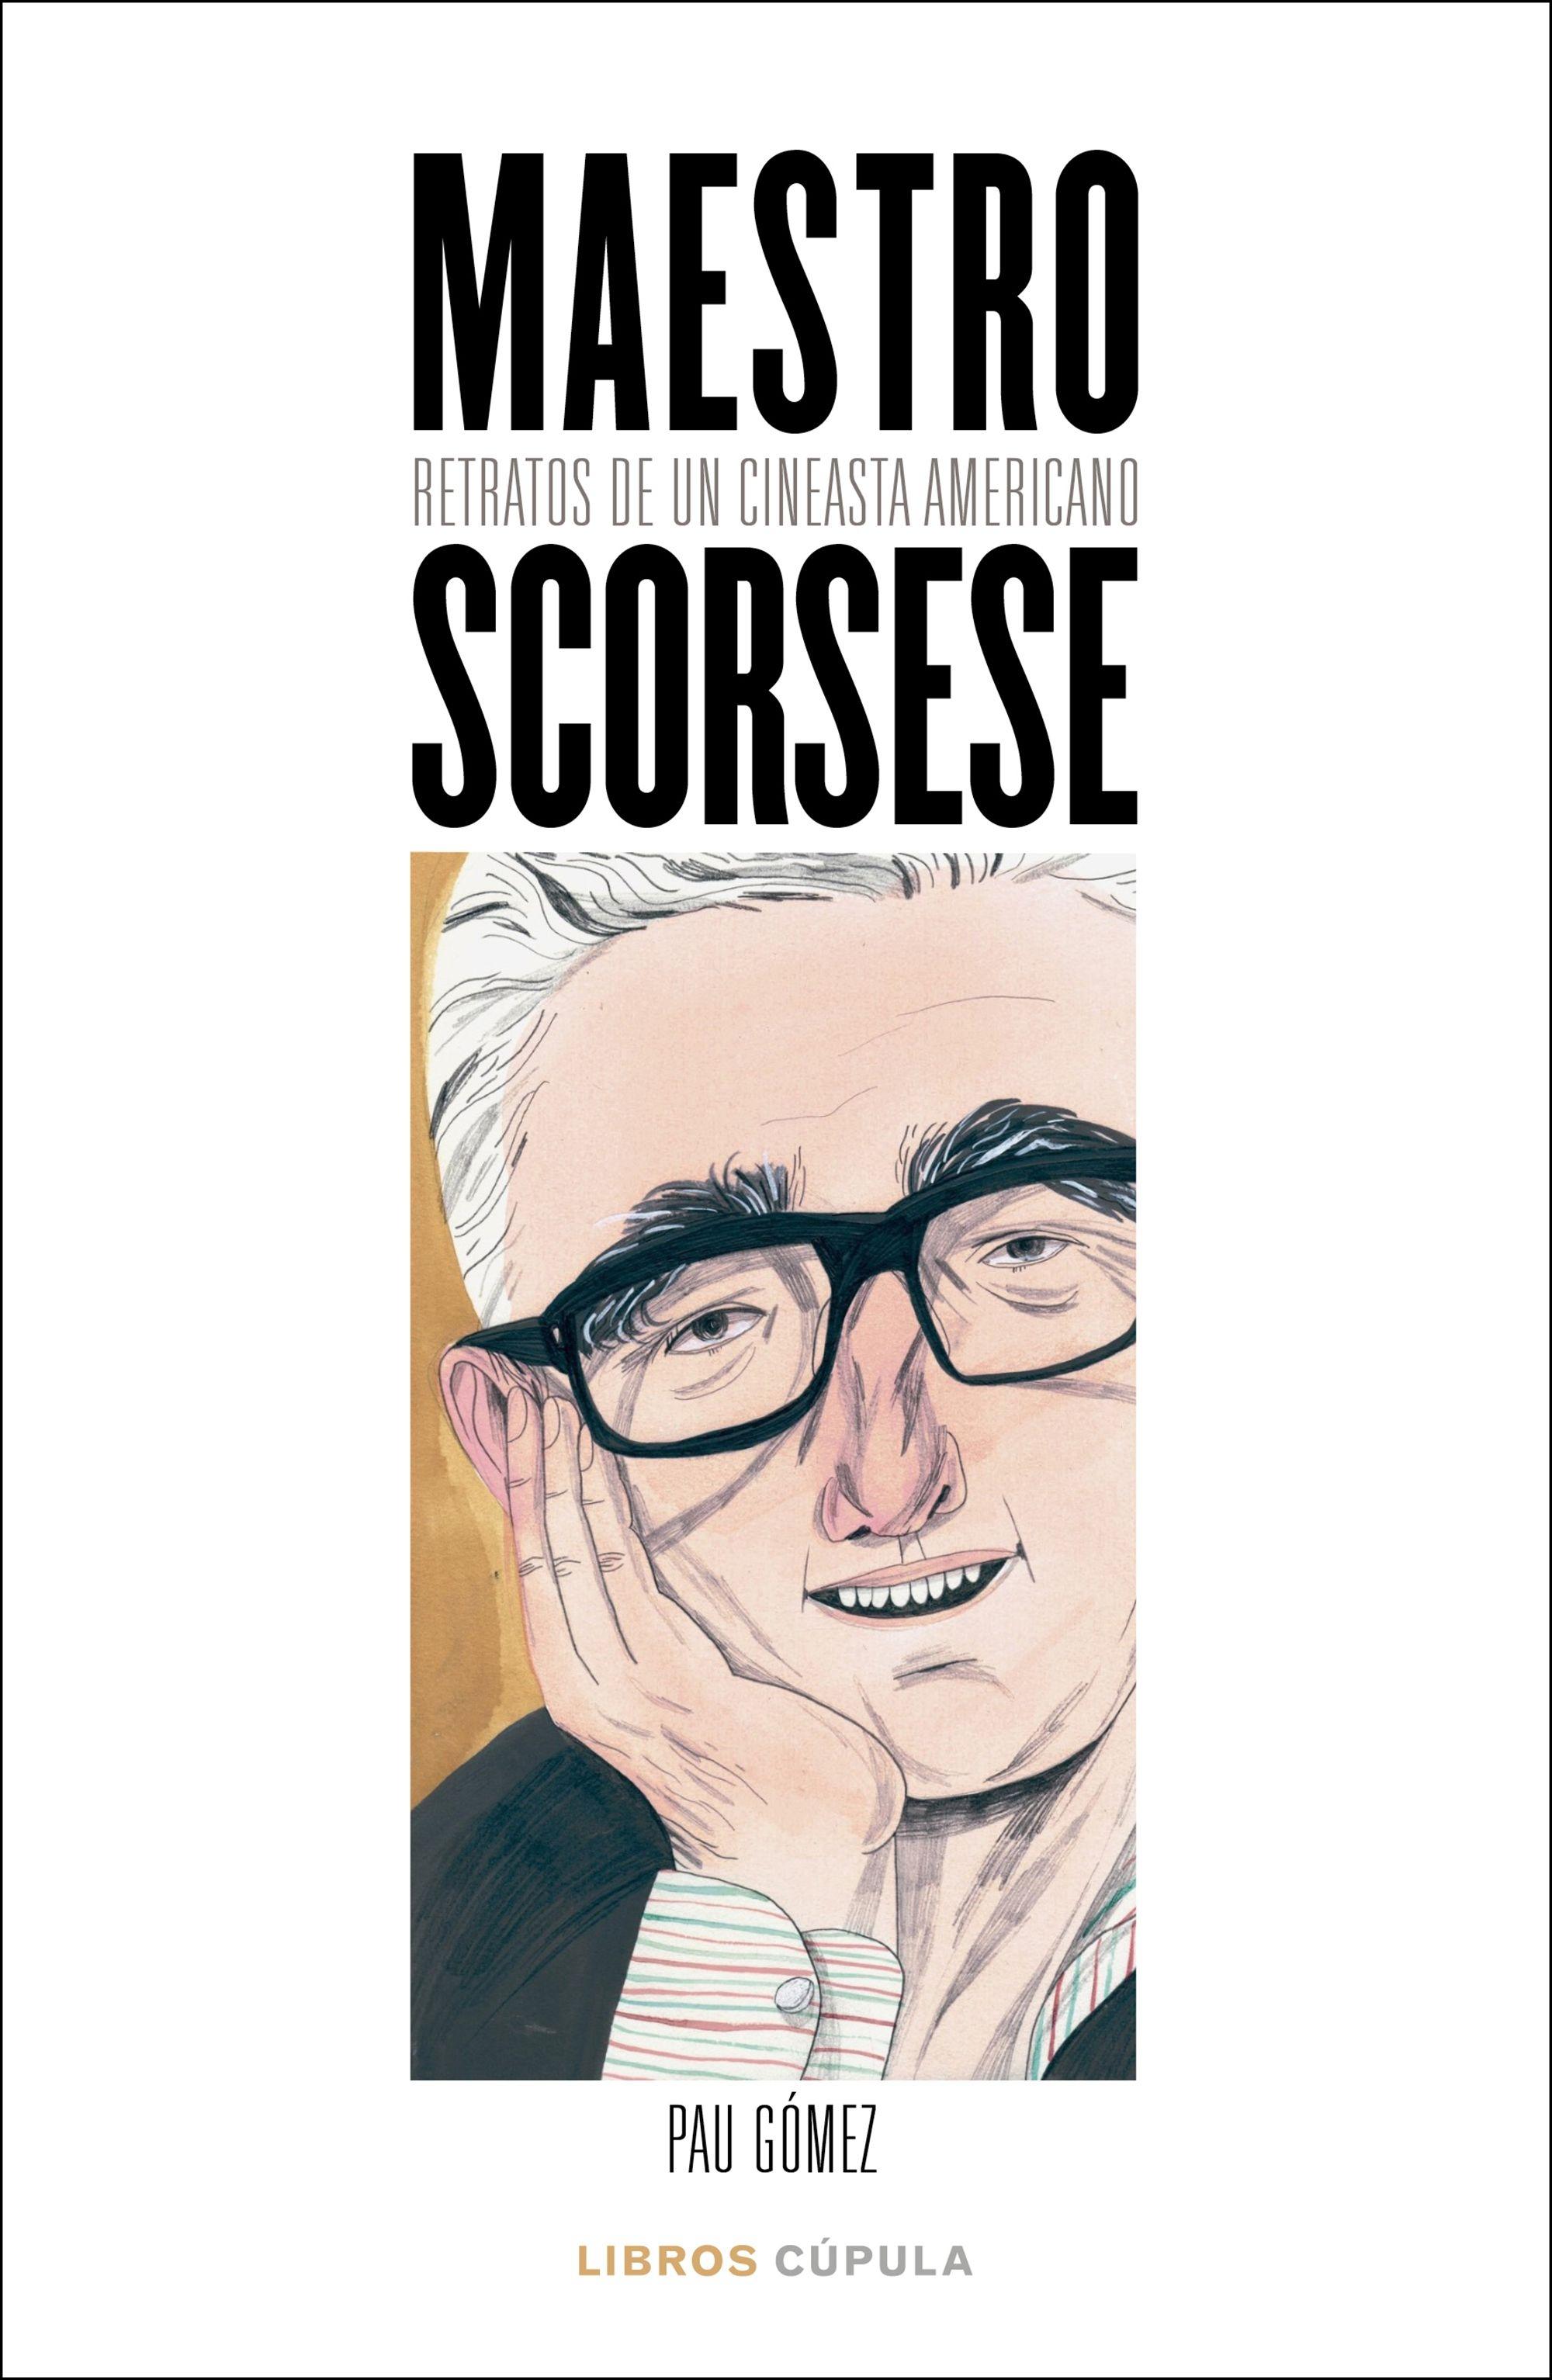 Maestro Scorsese "Retratos de un cineasta americano"